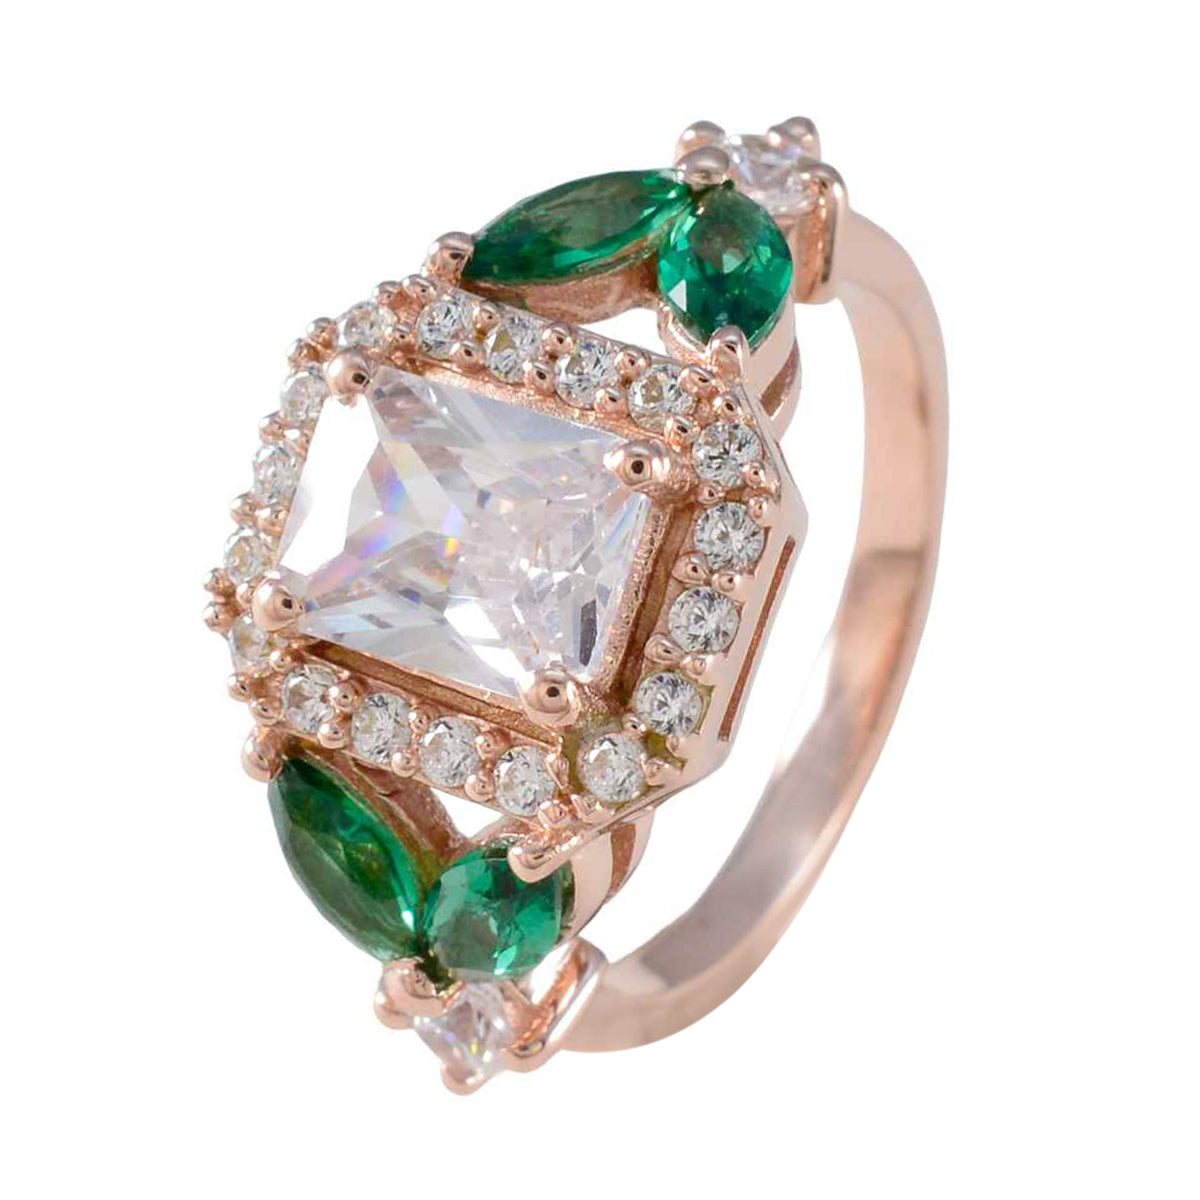 Riyo Uitstekende zilveren ring met roségouden smaragdgroene CZ-steen Octagon-vorm Prong-instelling Aangepaste sieraden Verjaardagsring